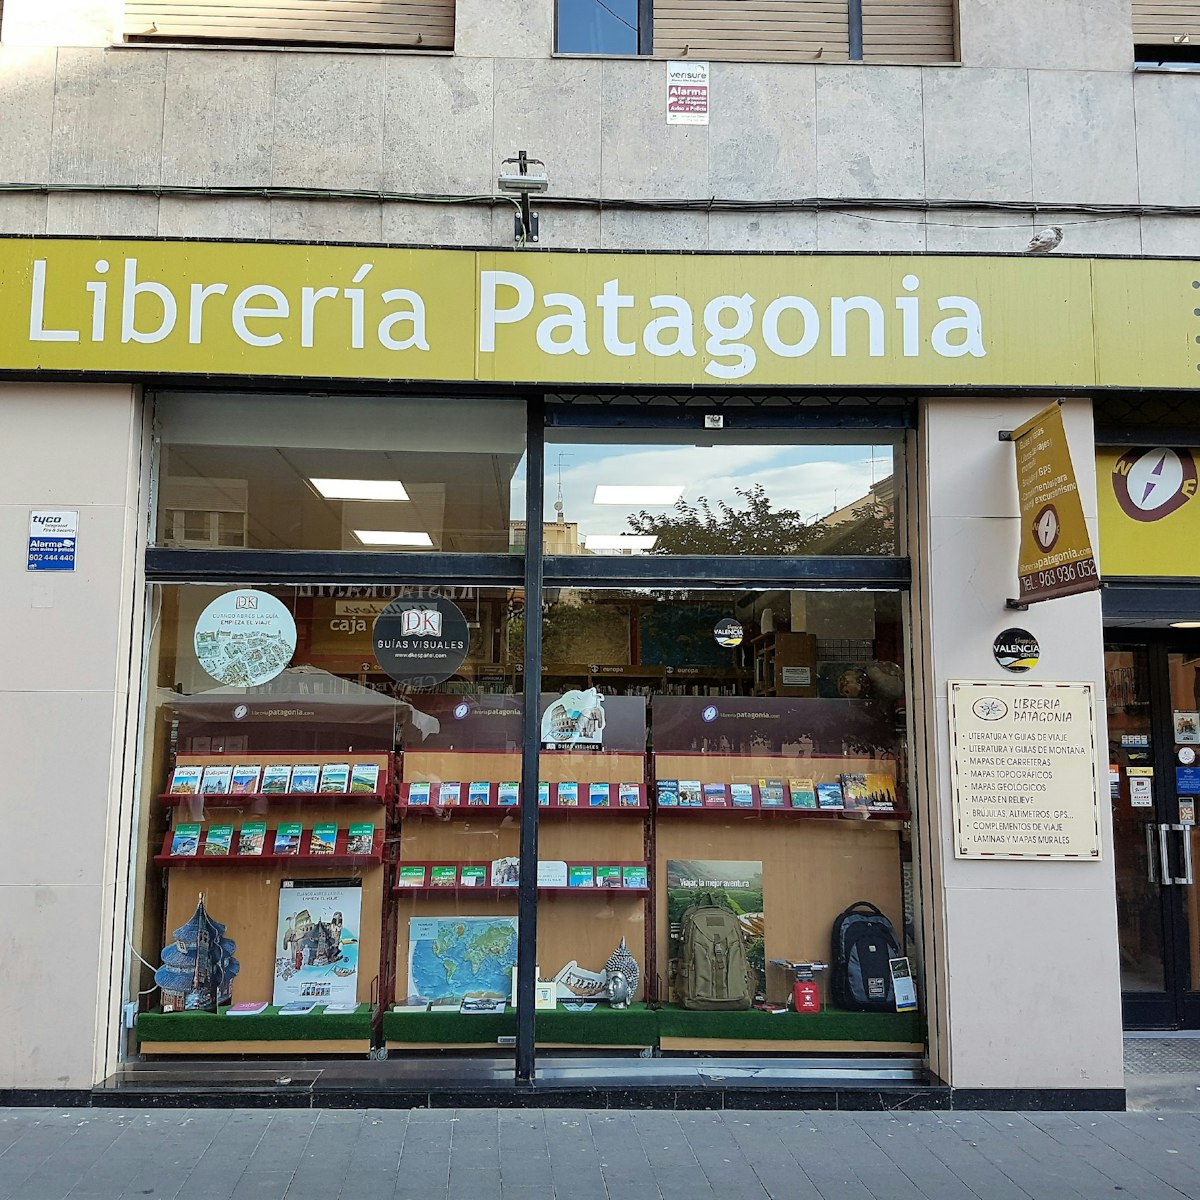 Street view of Librería Patagonia.